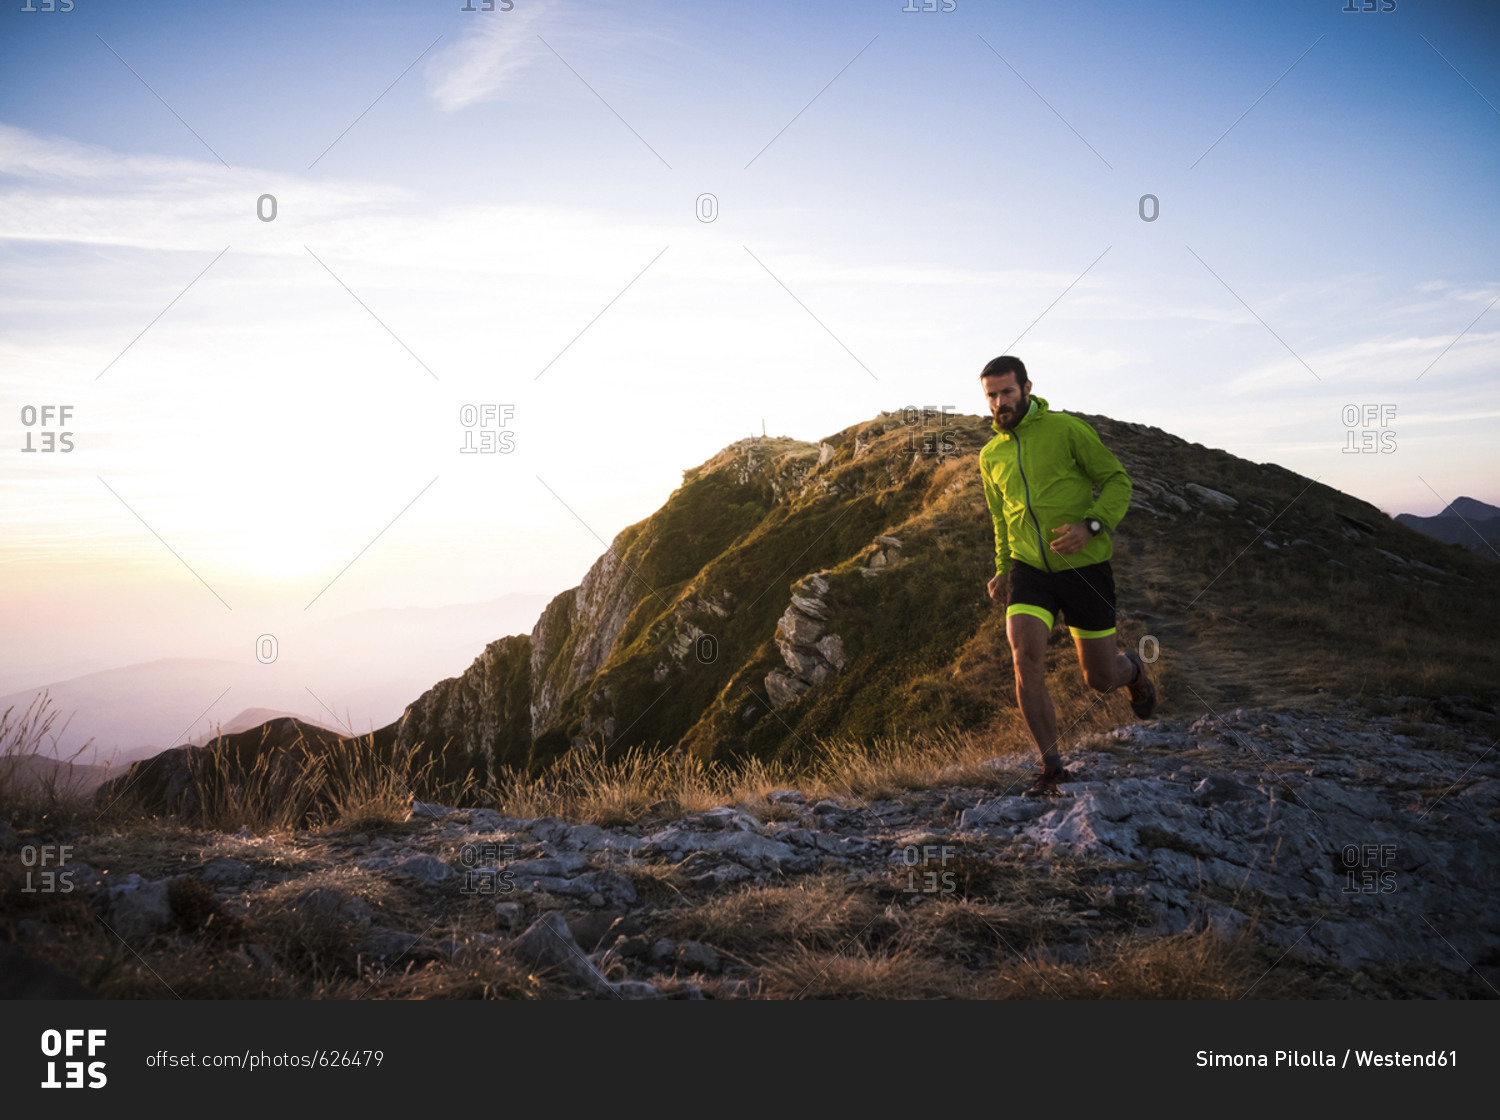 Italy- man running on mountain trail